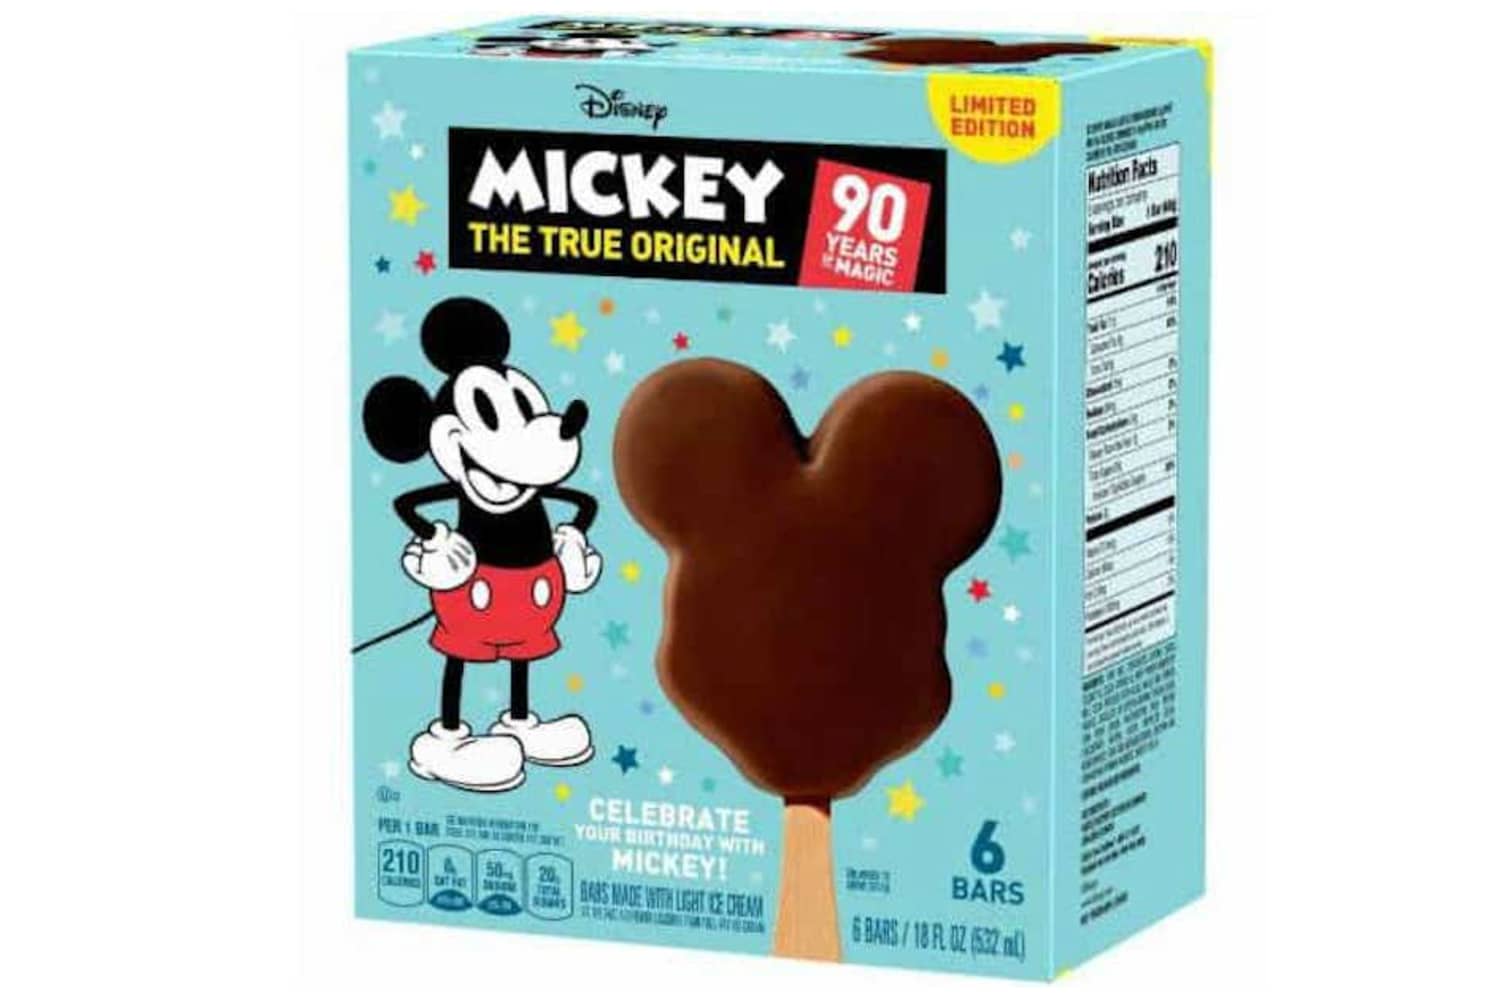 Mickey Mouse izozki tabernak saltokietan salduko dira ofizialki - Eros itzazu guztiak desagertu baino lehen